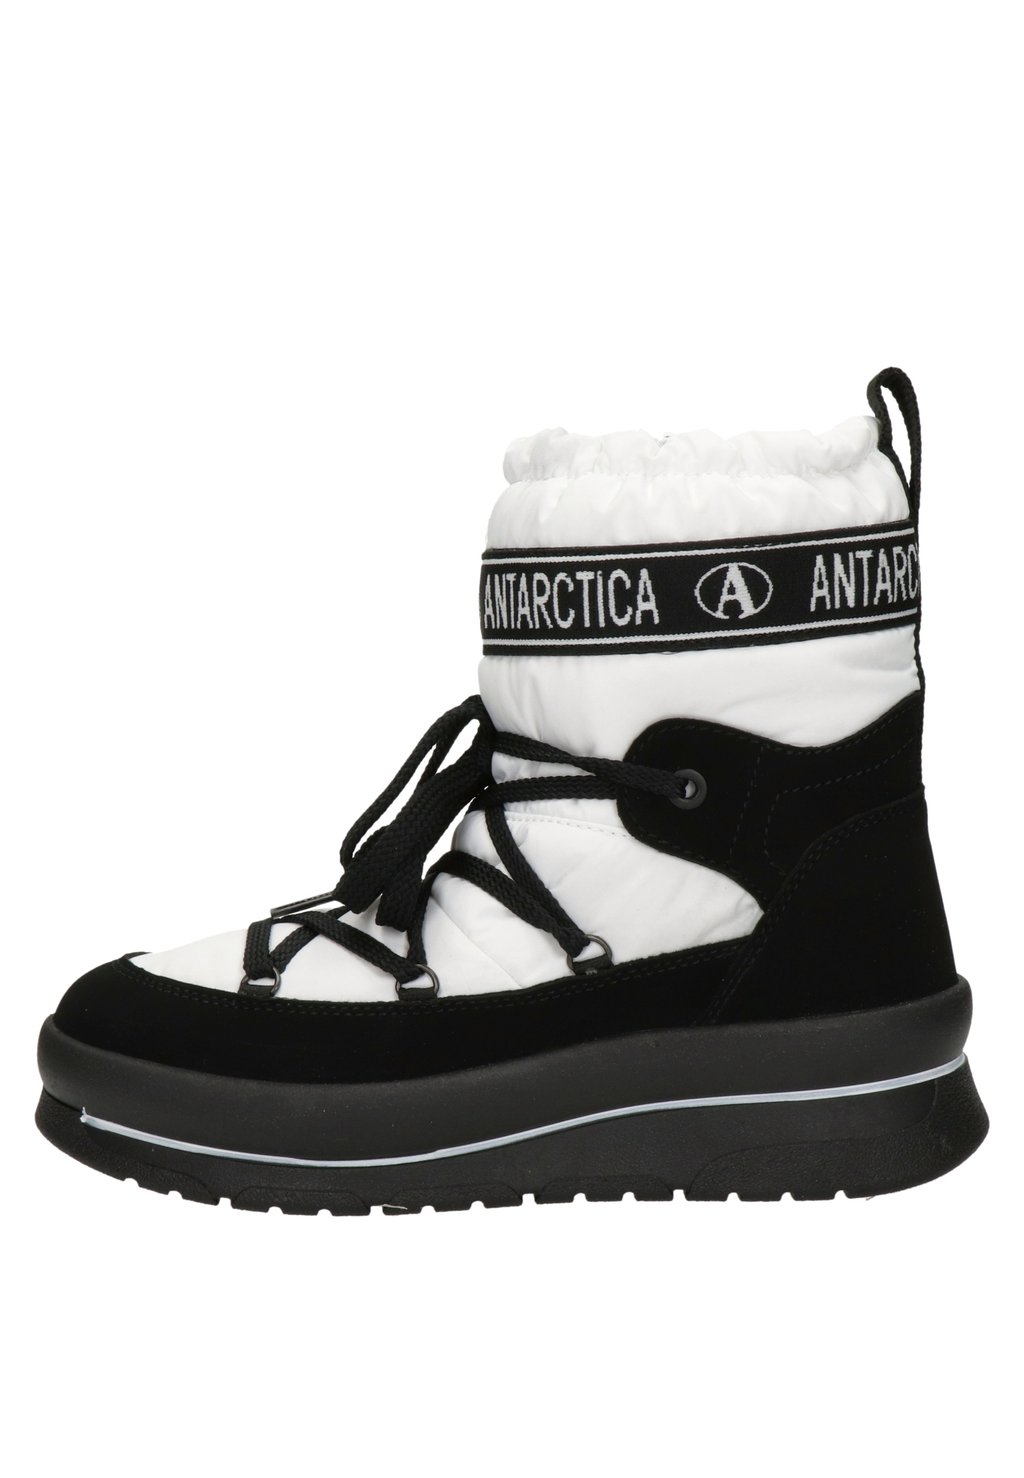 Зимние сапоги Antarctica Boots, белый